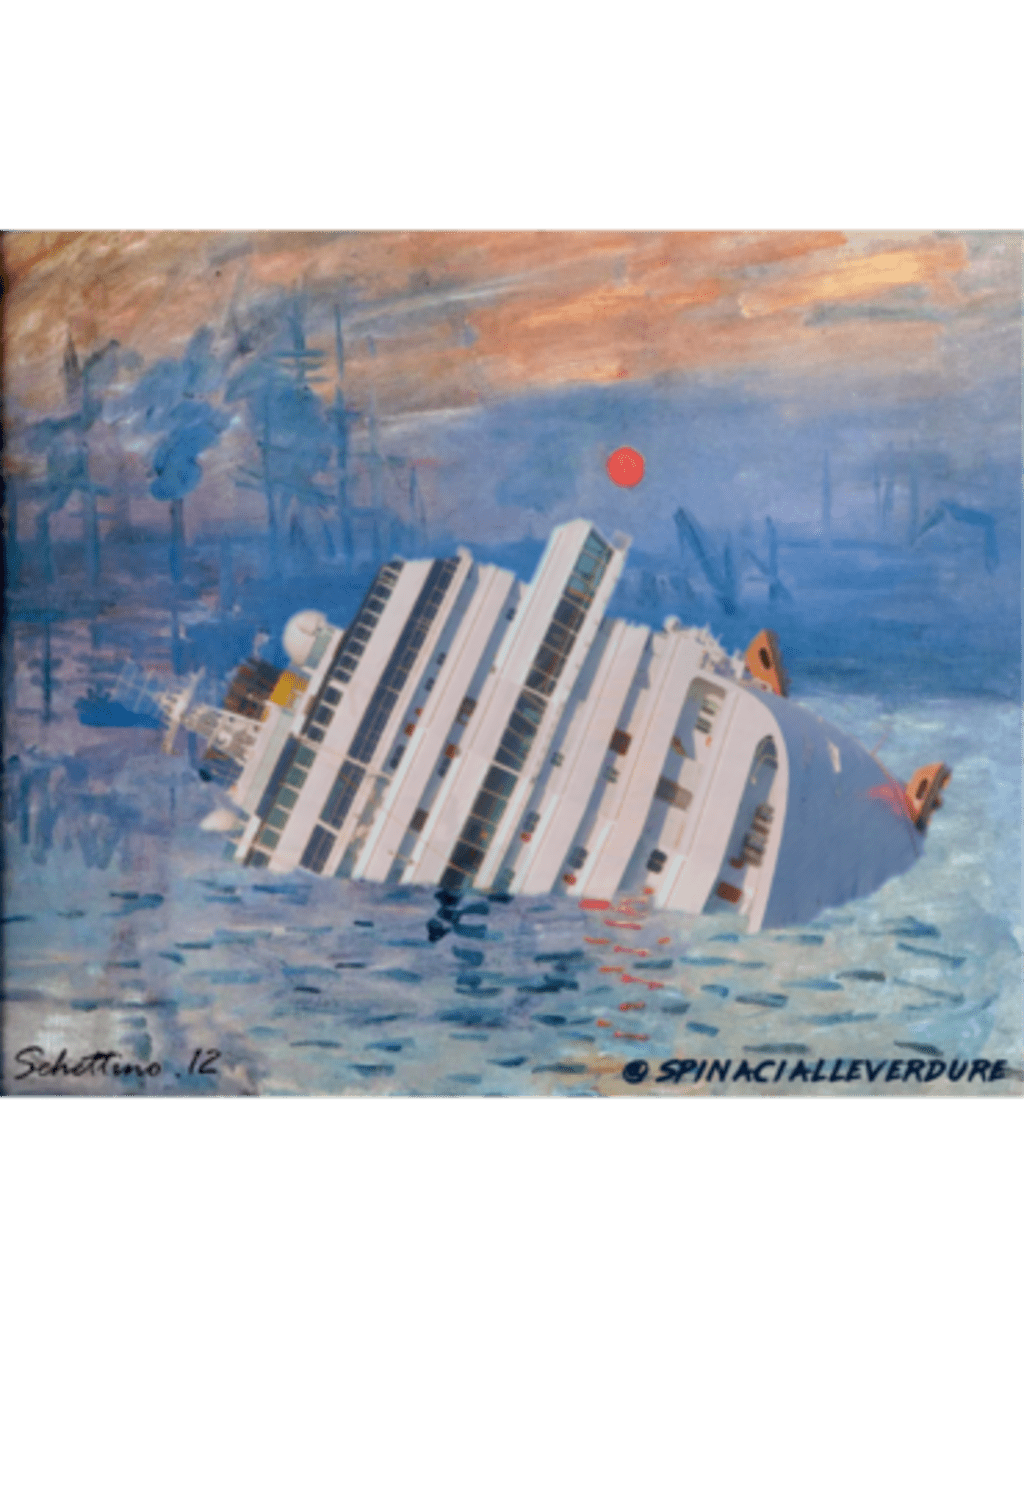 Il naufragio della Concordia di Monet - Spinaci alle Verdure